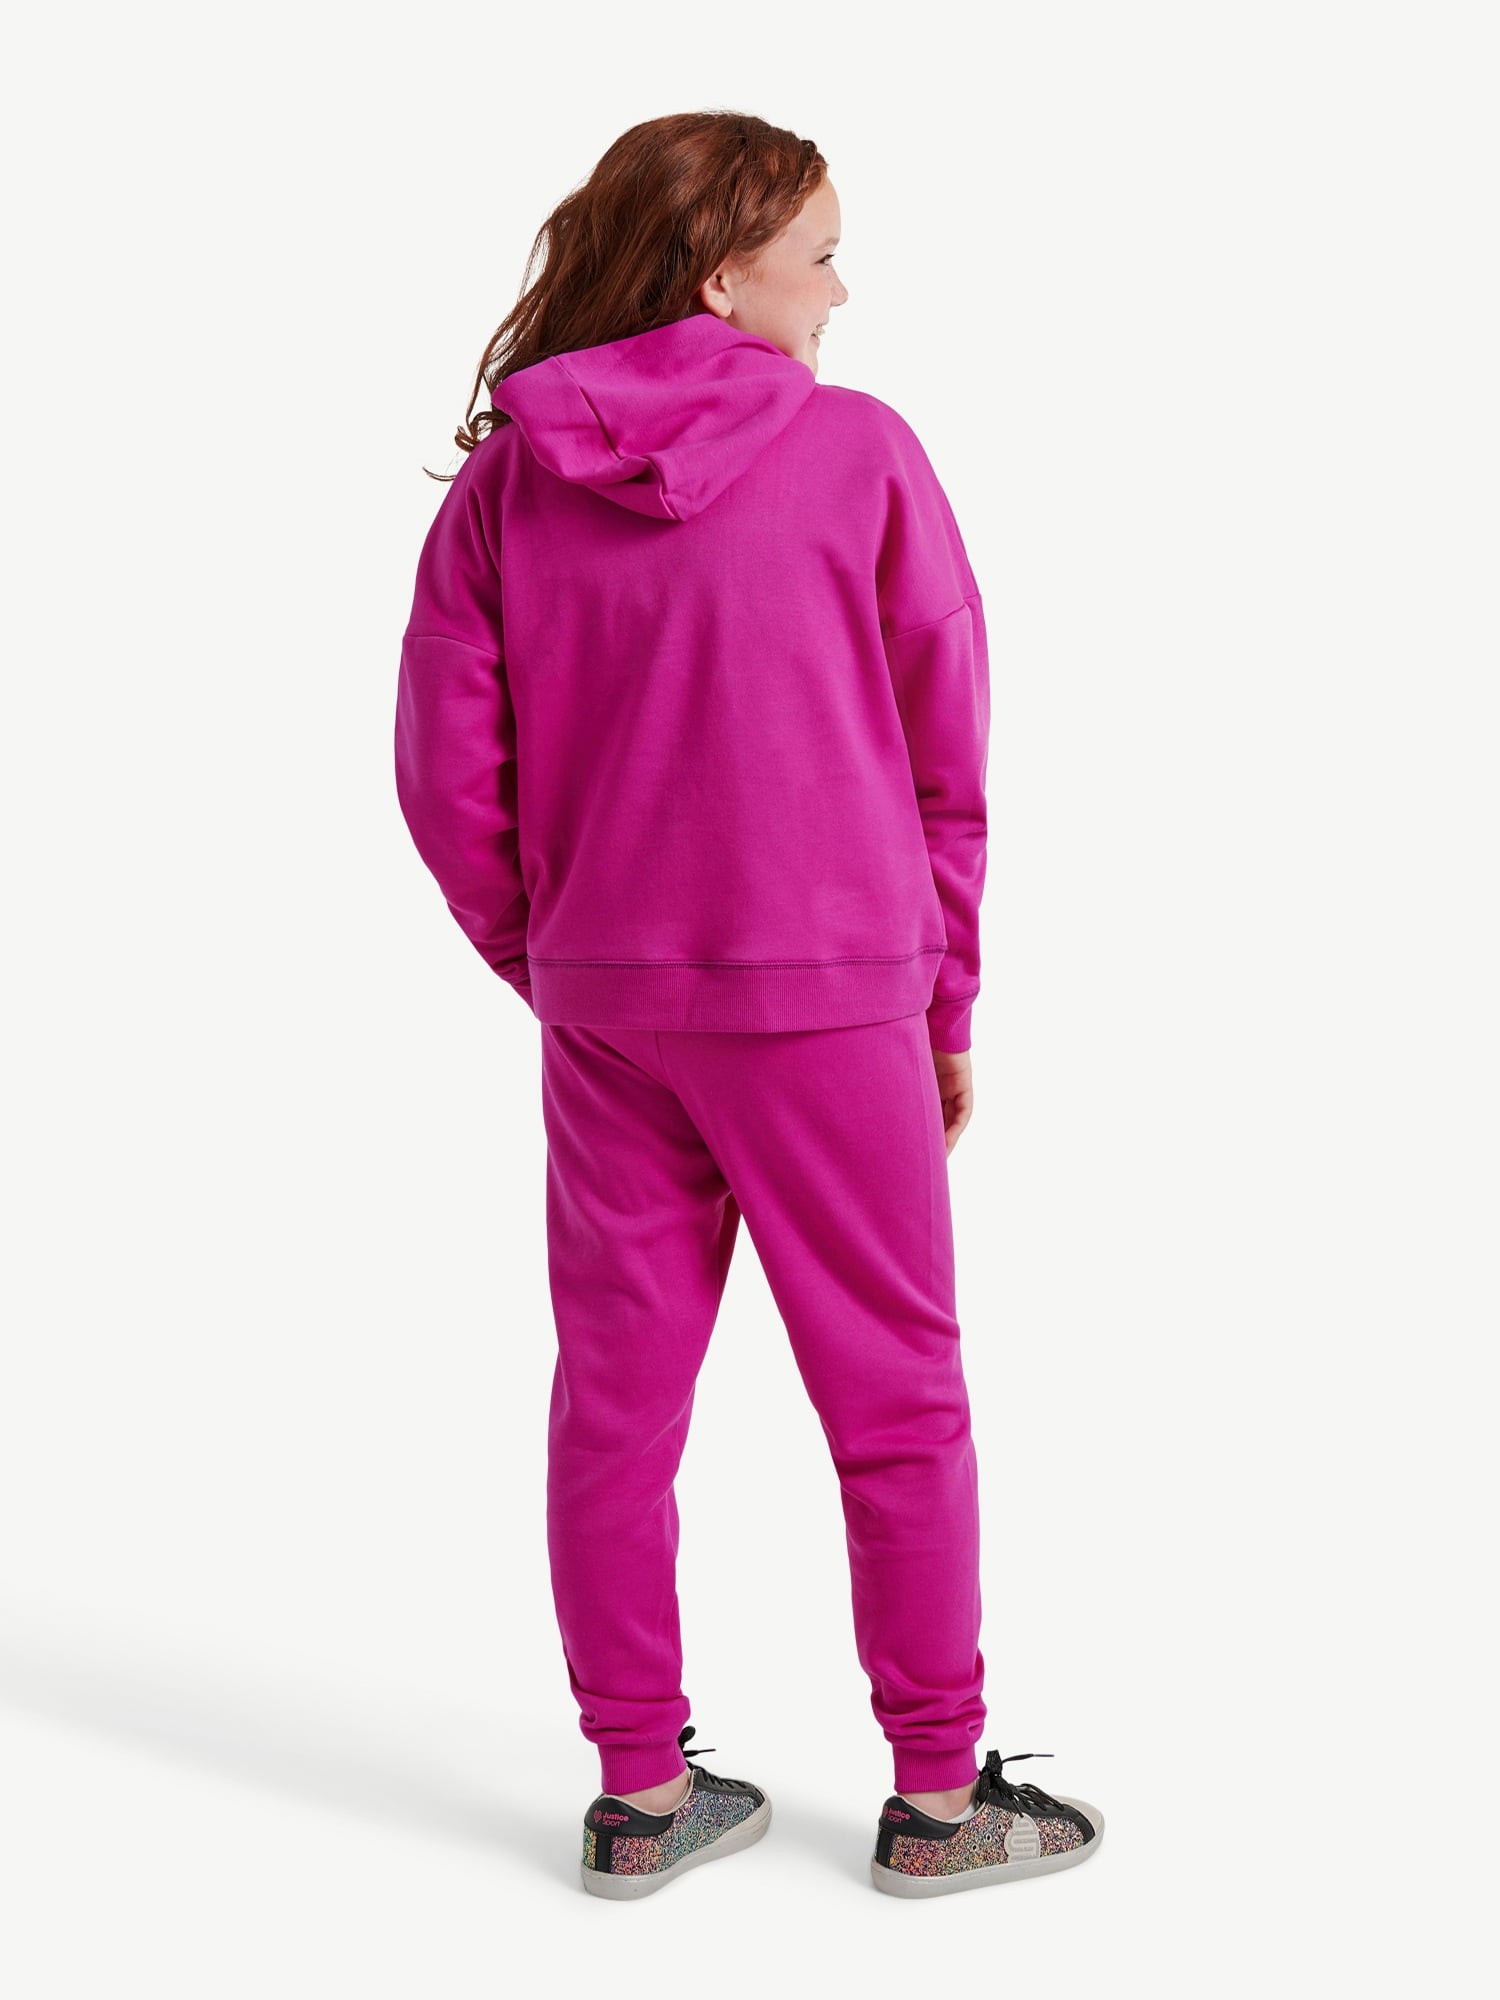 Gender-Neutral Zip Hoodie & Jogger Sweatpants Set for Kids